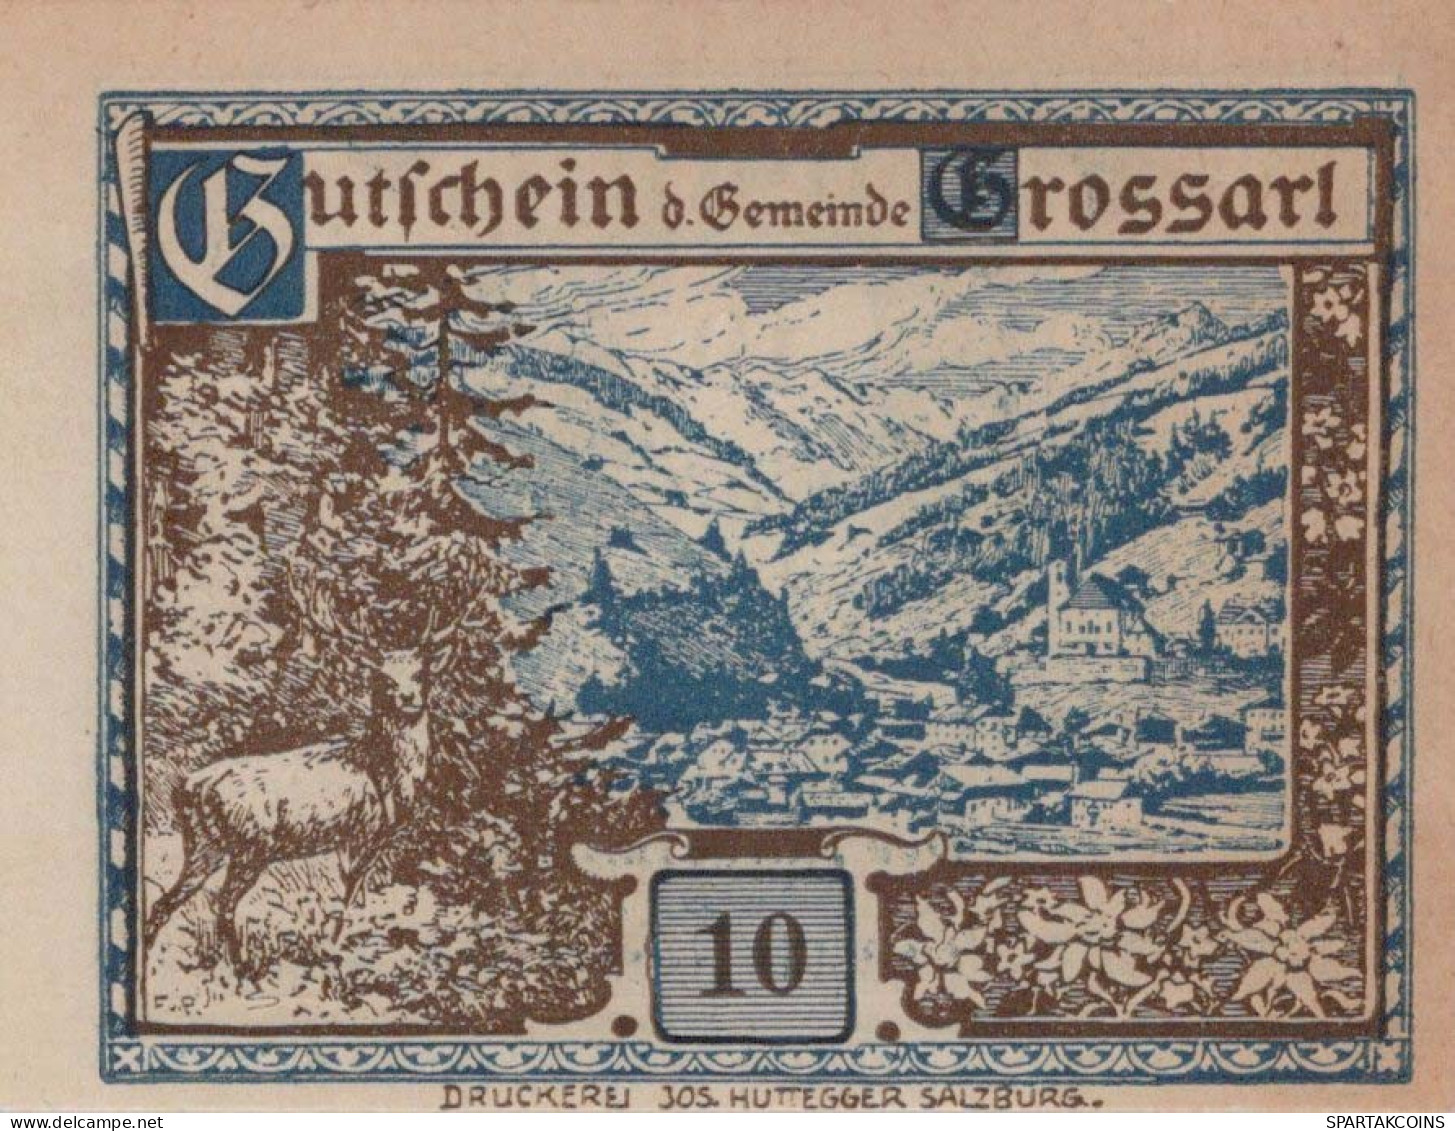 10 HELLER 1920 Stadt GROSSARL Salzburg Österreich Notgeld Banknote #PE998 - [11] Emissions Locales